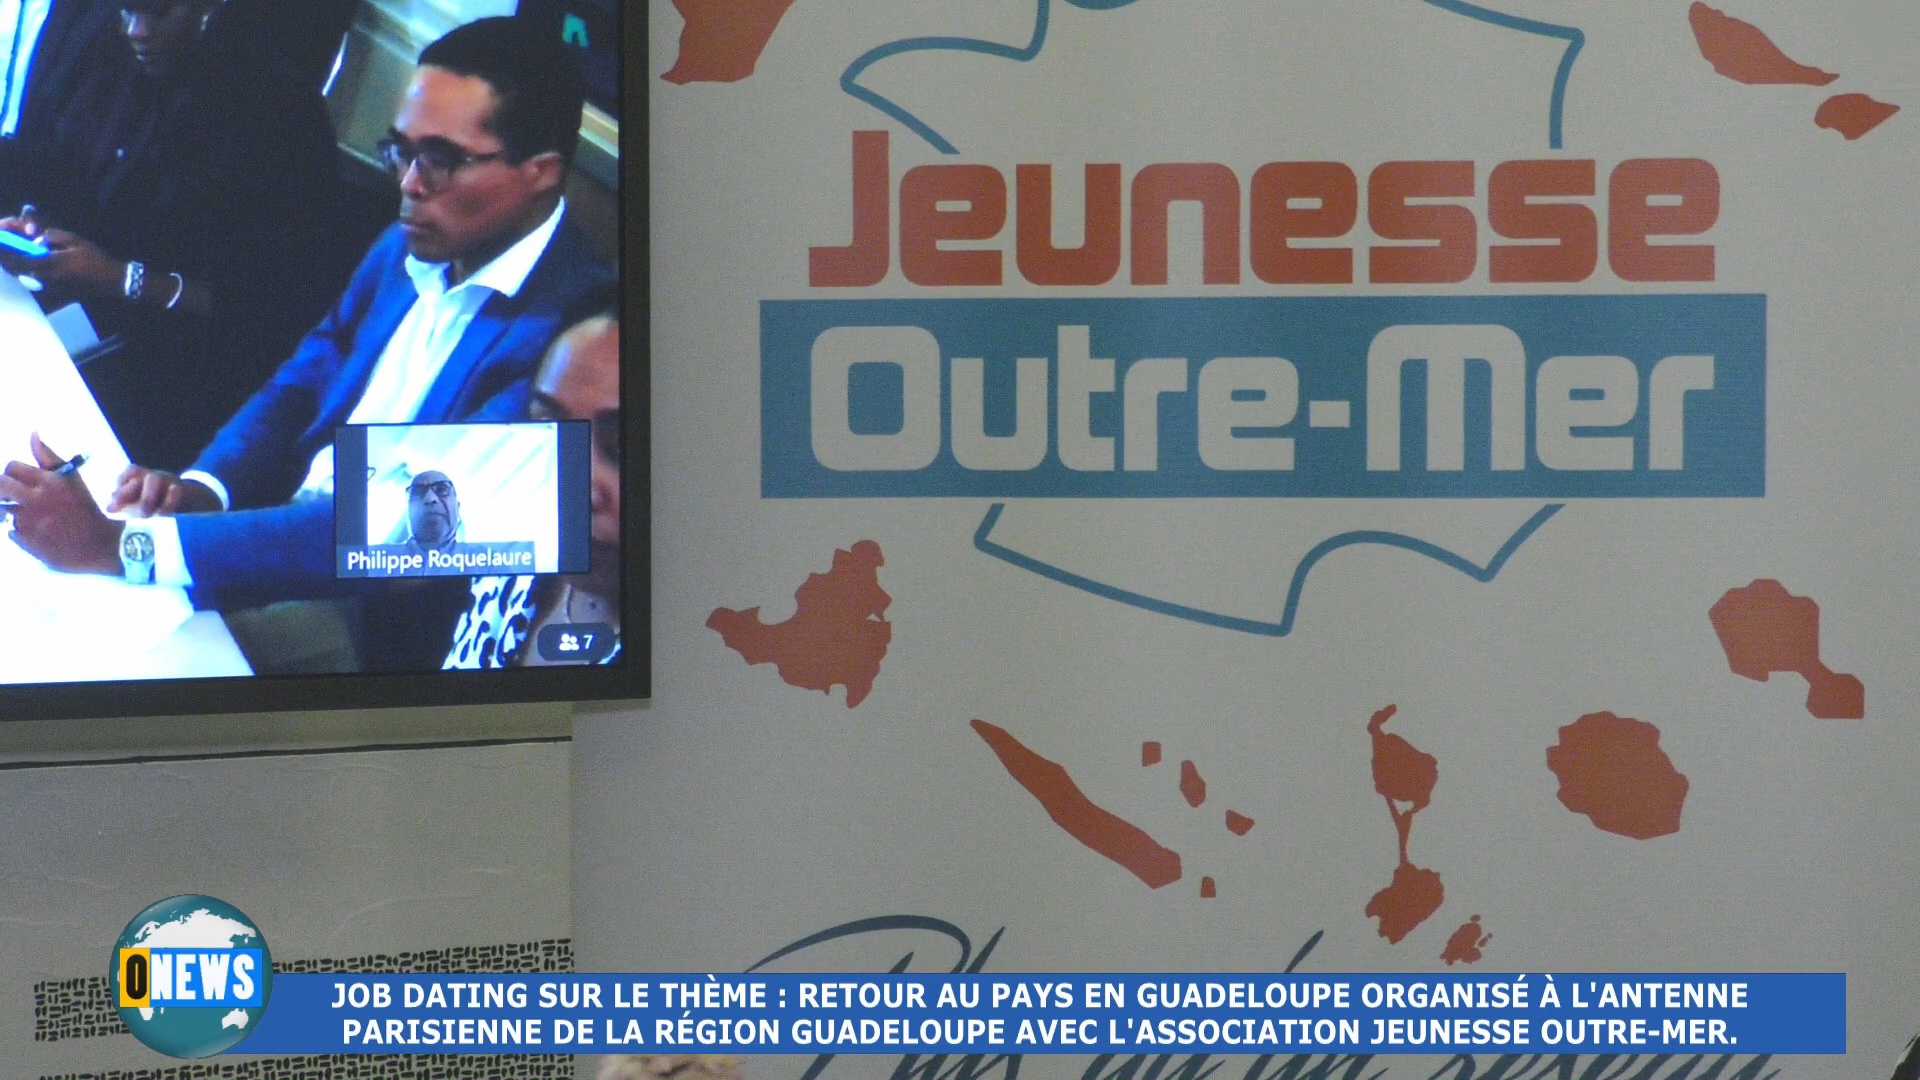 [Vidéo] Hexagone. Job daiting sur le thème retour pays Guadeloupe organisé par l Association Jeunesse Outre mer à Paris